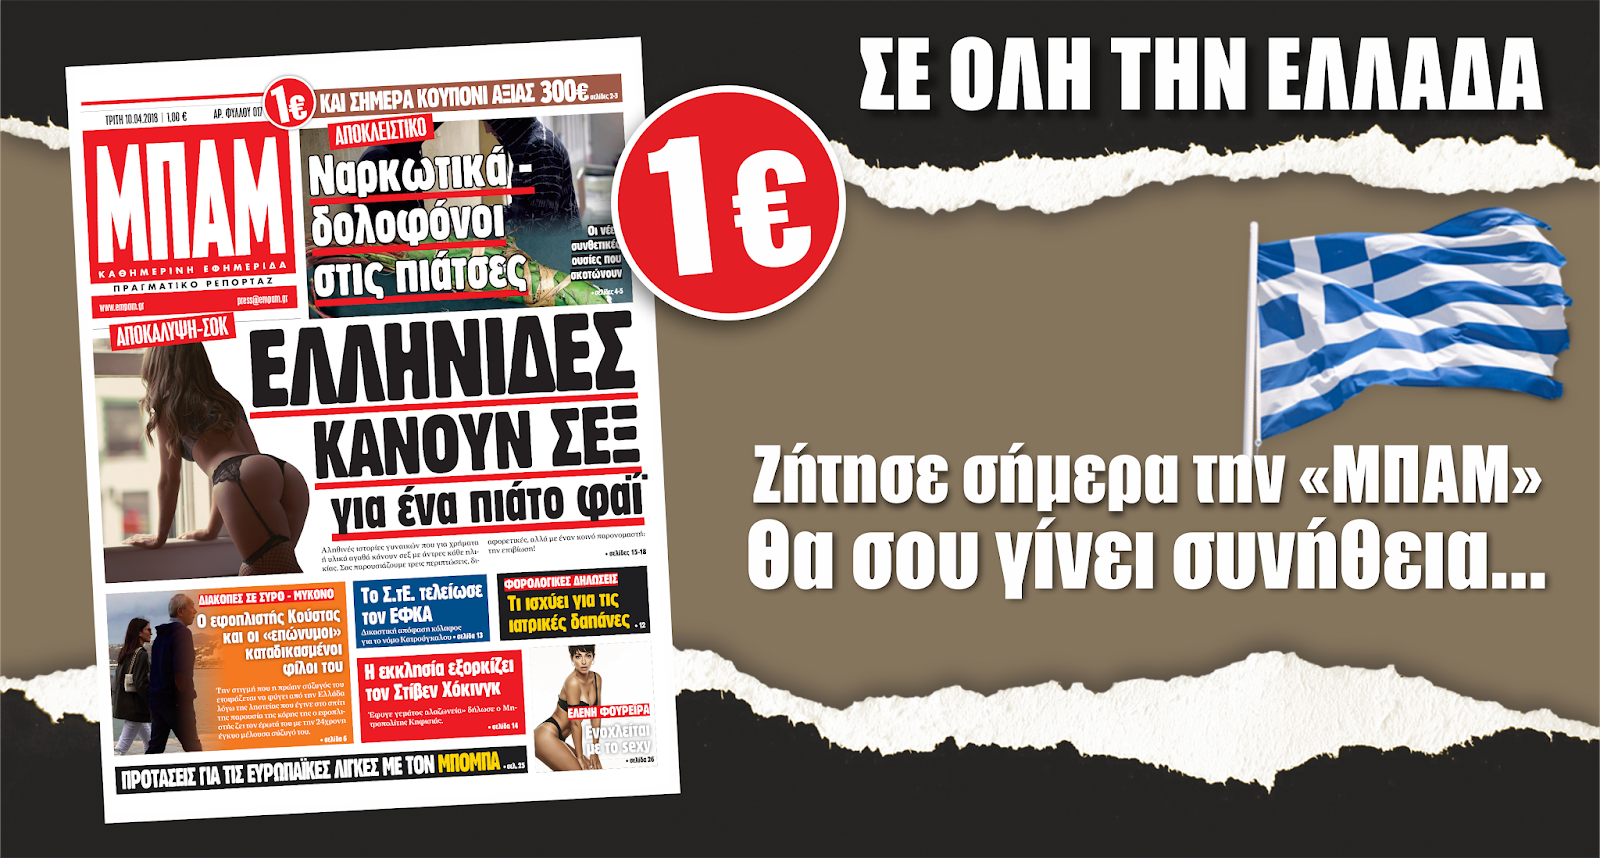 Στην "ΜΠΑΜ" της Τρίτης ένα ΑΠΟΚΑΛΥΠΤΙΚΟ άρθρο που σοκάρει - Οι Ελληνίδες πηγαίνουν με άντρες για ένα πιάτο φαϊ